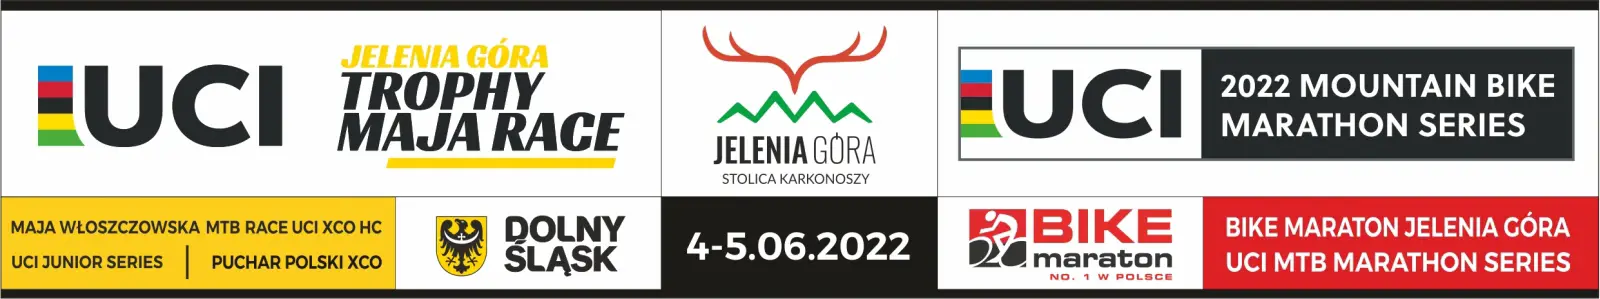 Jelenia Góra zaprasza na dwa szalone dni kolarstwa górskiego (4-5.06.2022)